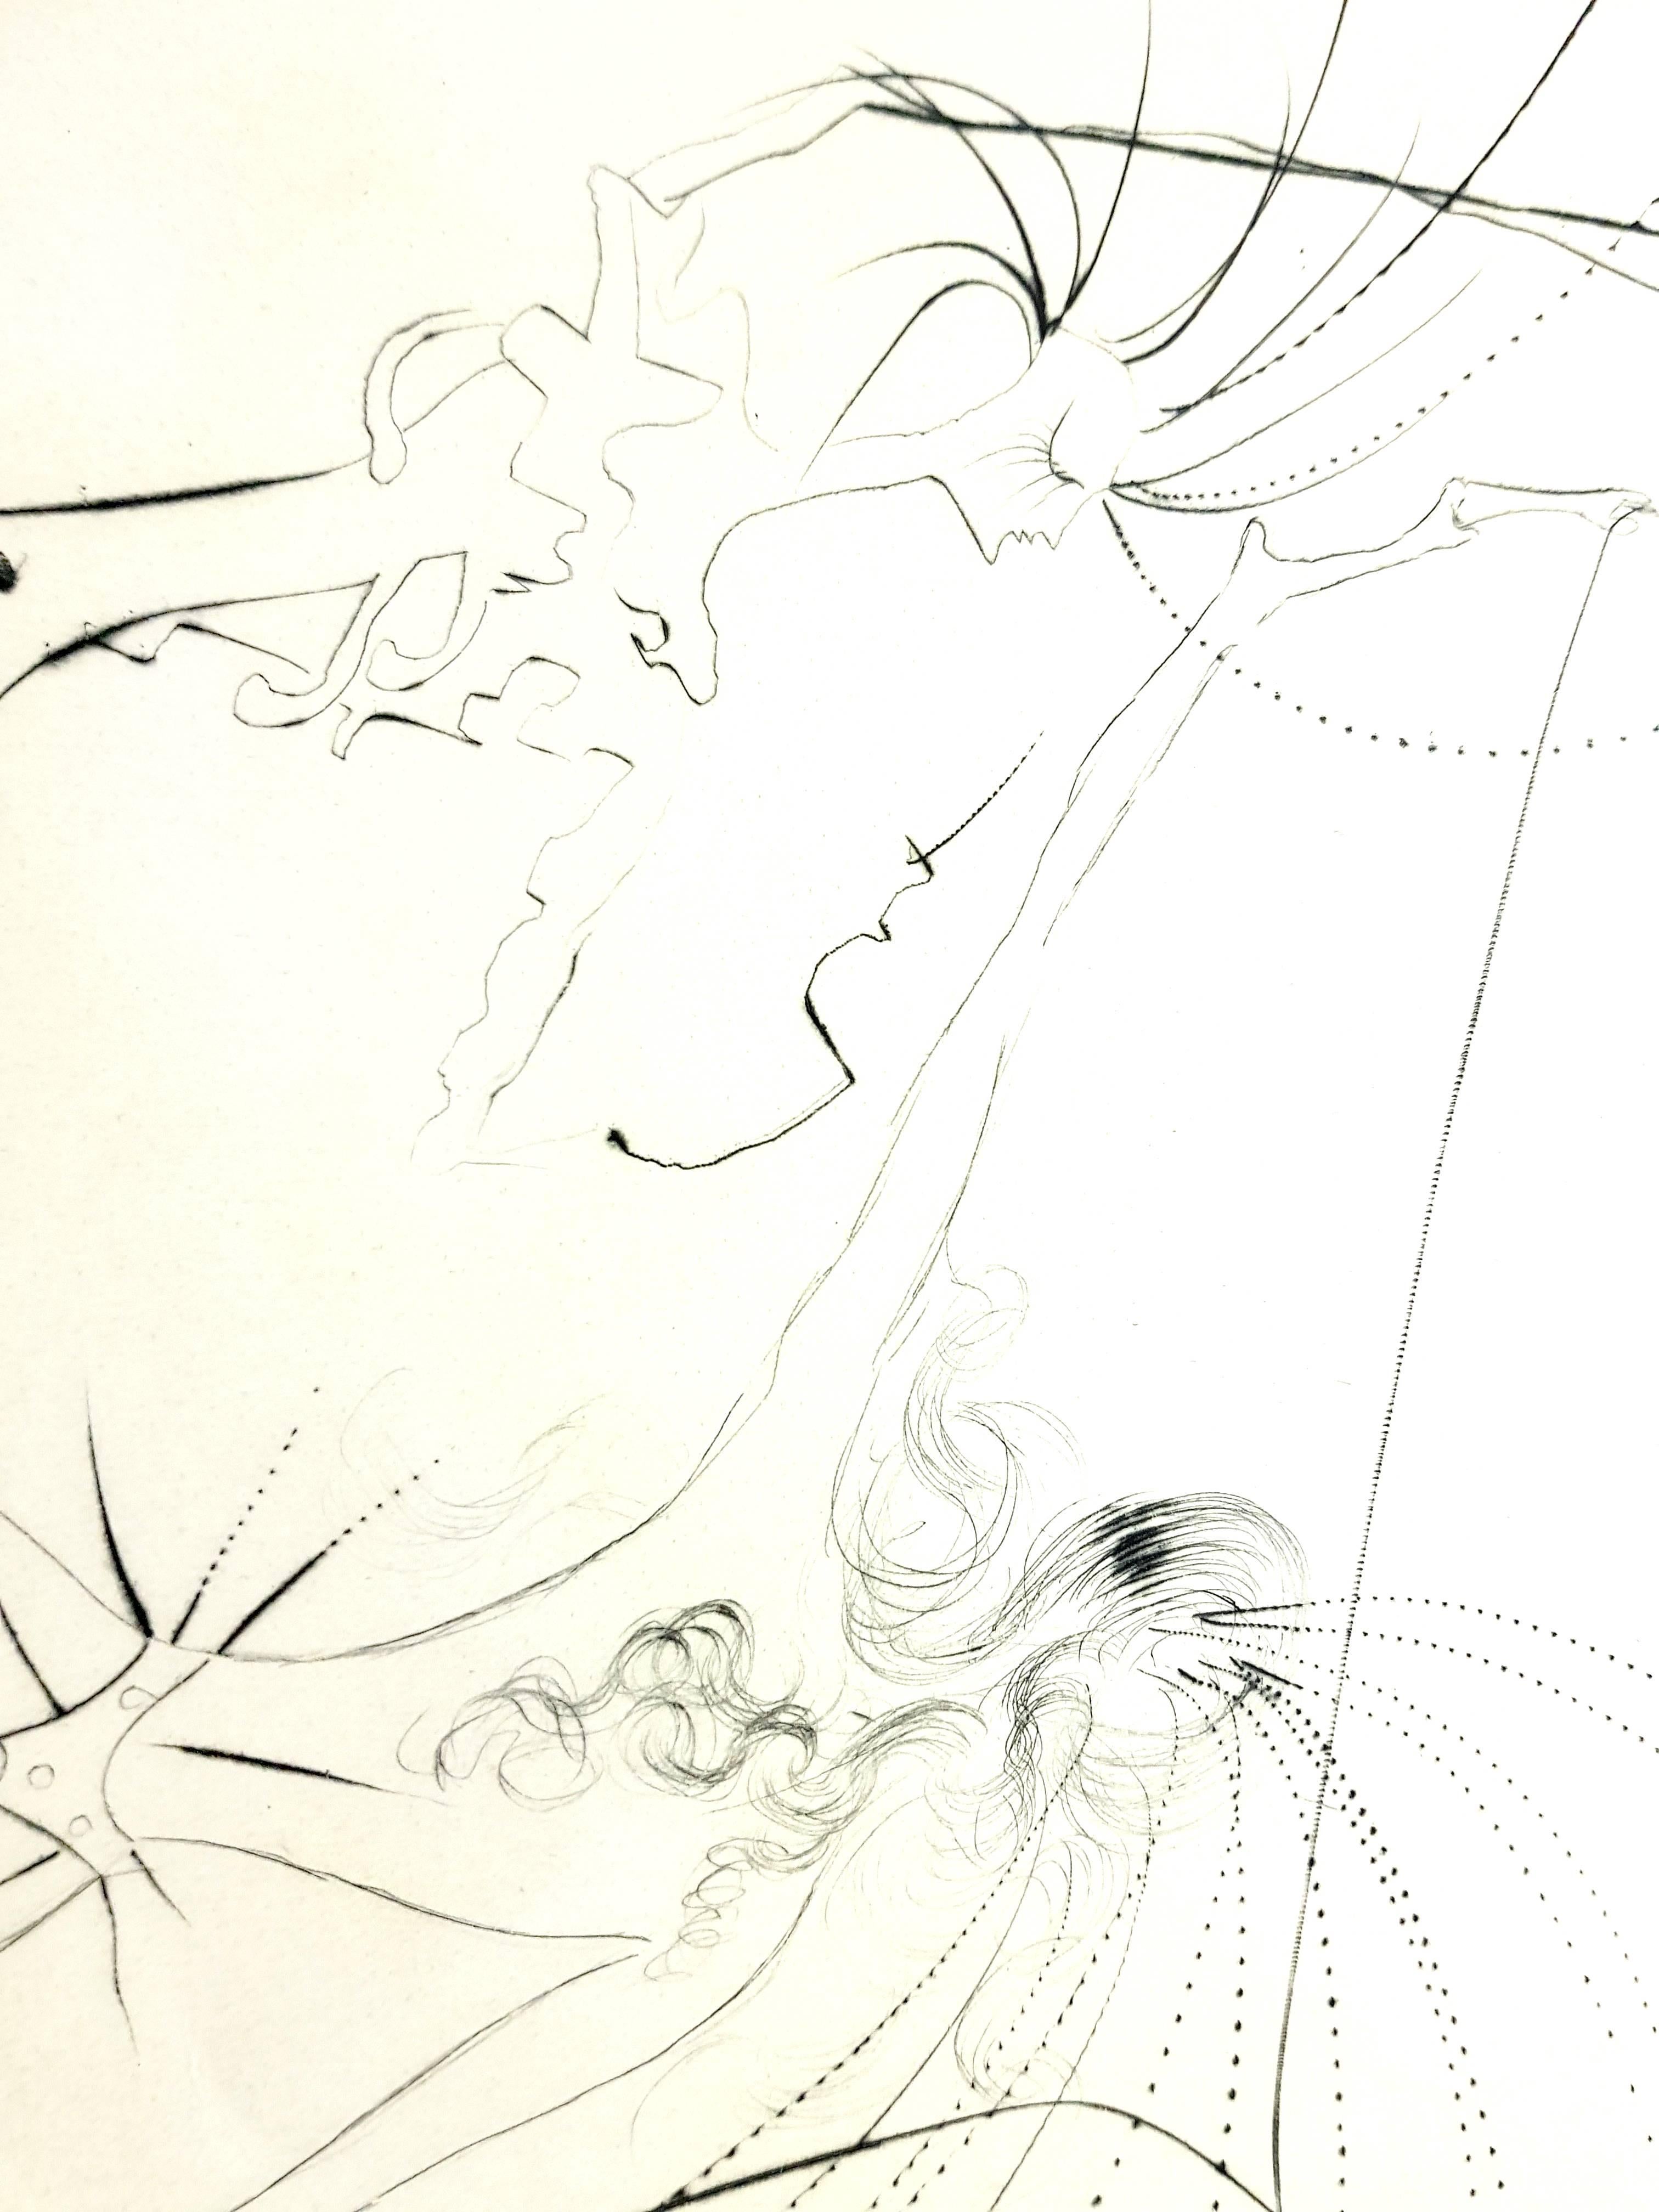 Salvador Dali – Spiky Buttocks – Original-Stempel-Signierte Radierung
Von Dali signierter Stempel
Auflage von 294 Exemplaren. 
Papier : Arches Vellum. 
Abmessungen: 16x12